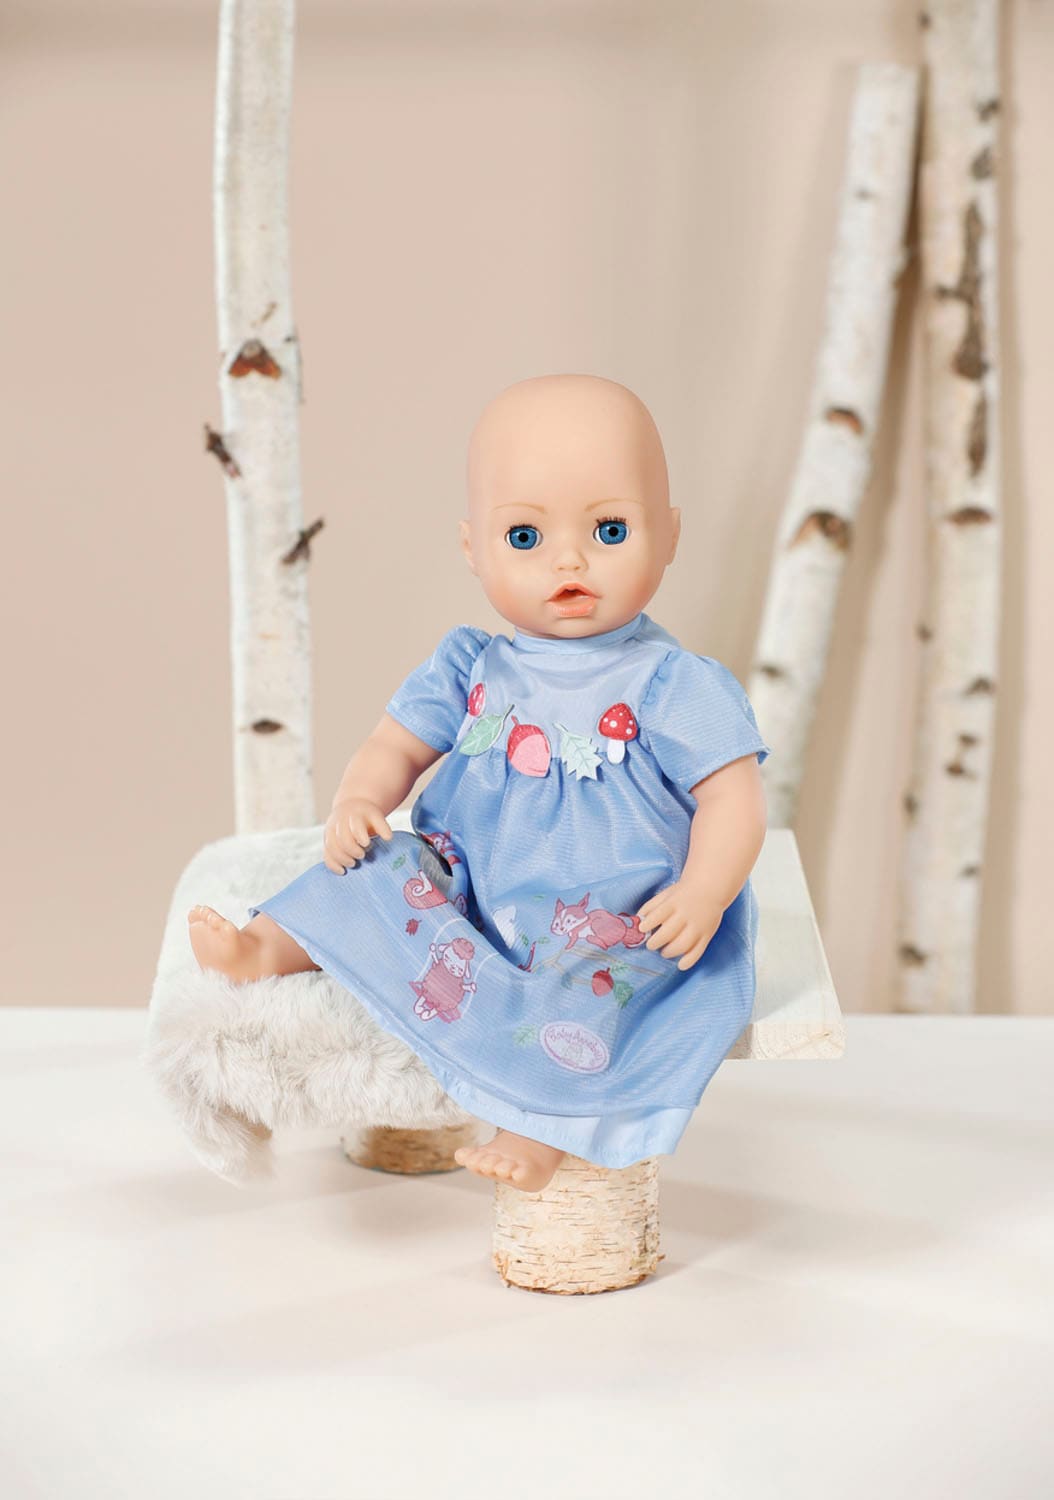 Baby Annabell Puppenkleidung »Kleid blau Eichhörnchen, 43 cm«